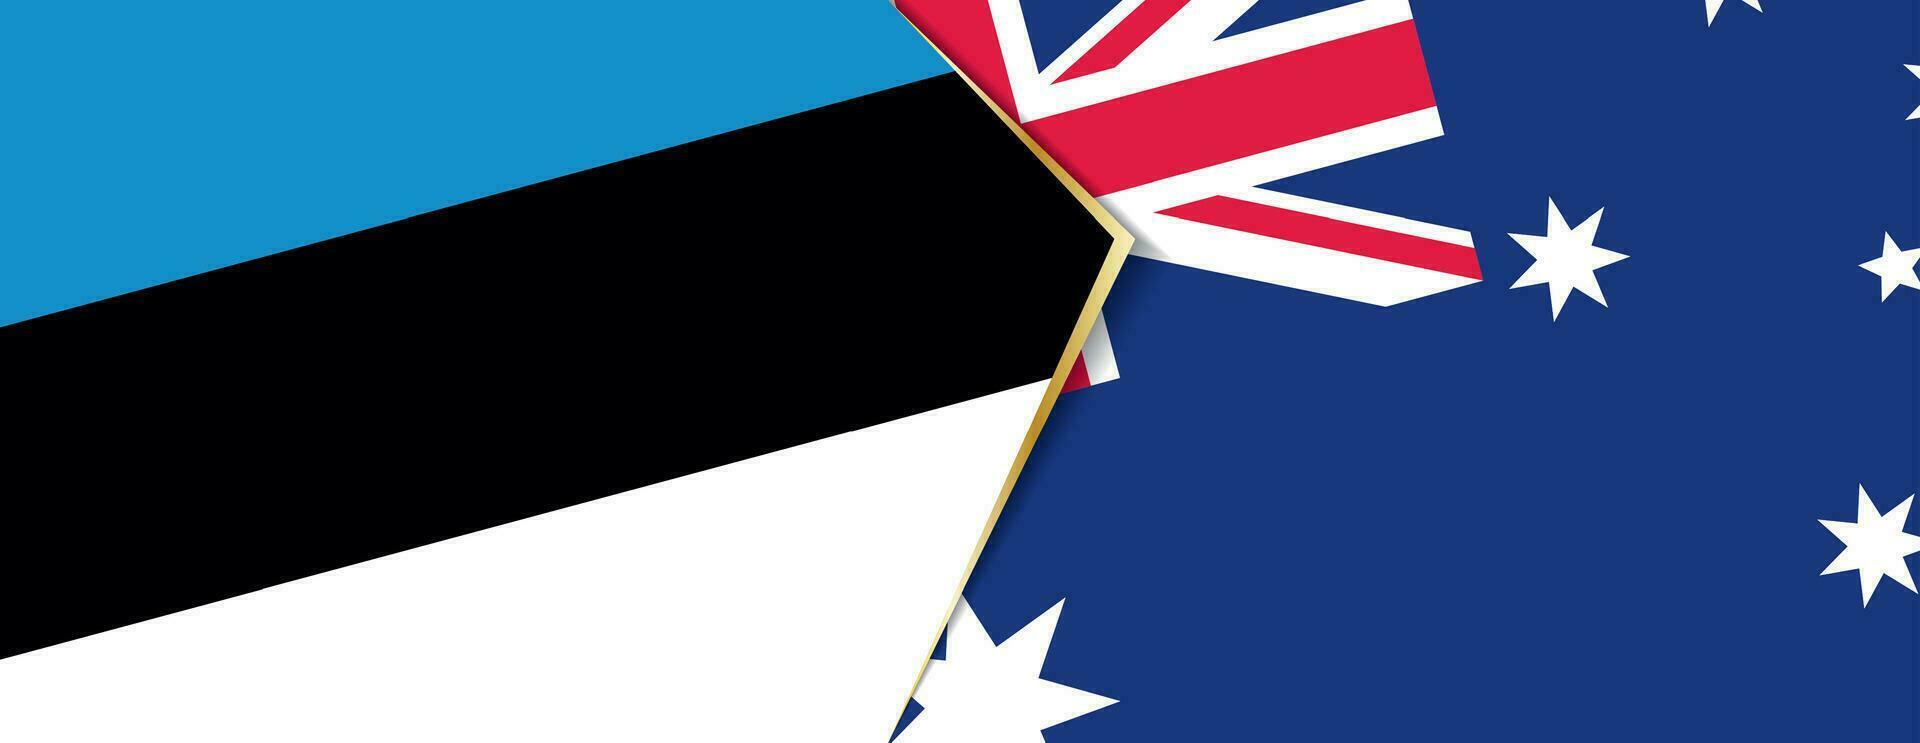 Estland und Australien Flaggen, zwei Vektor Flaggen.